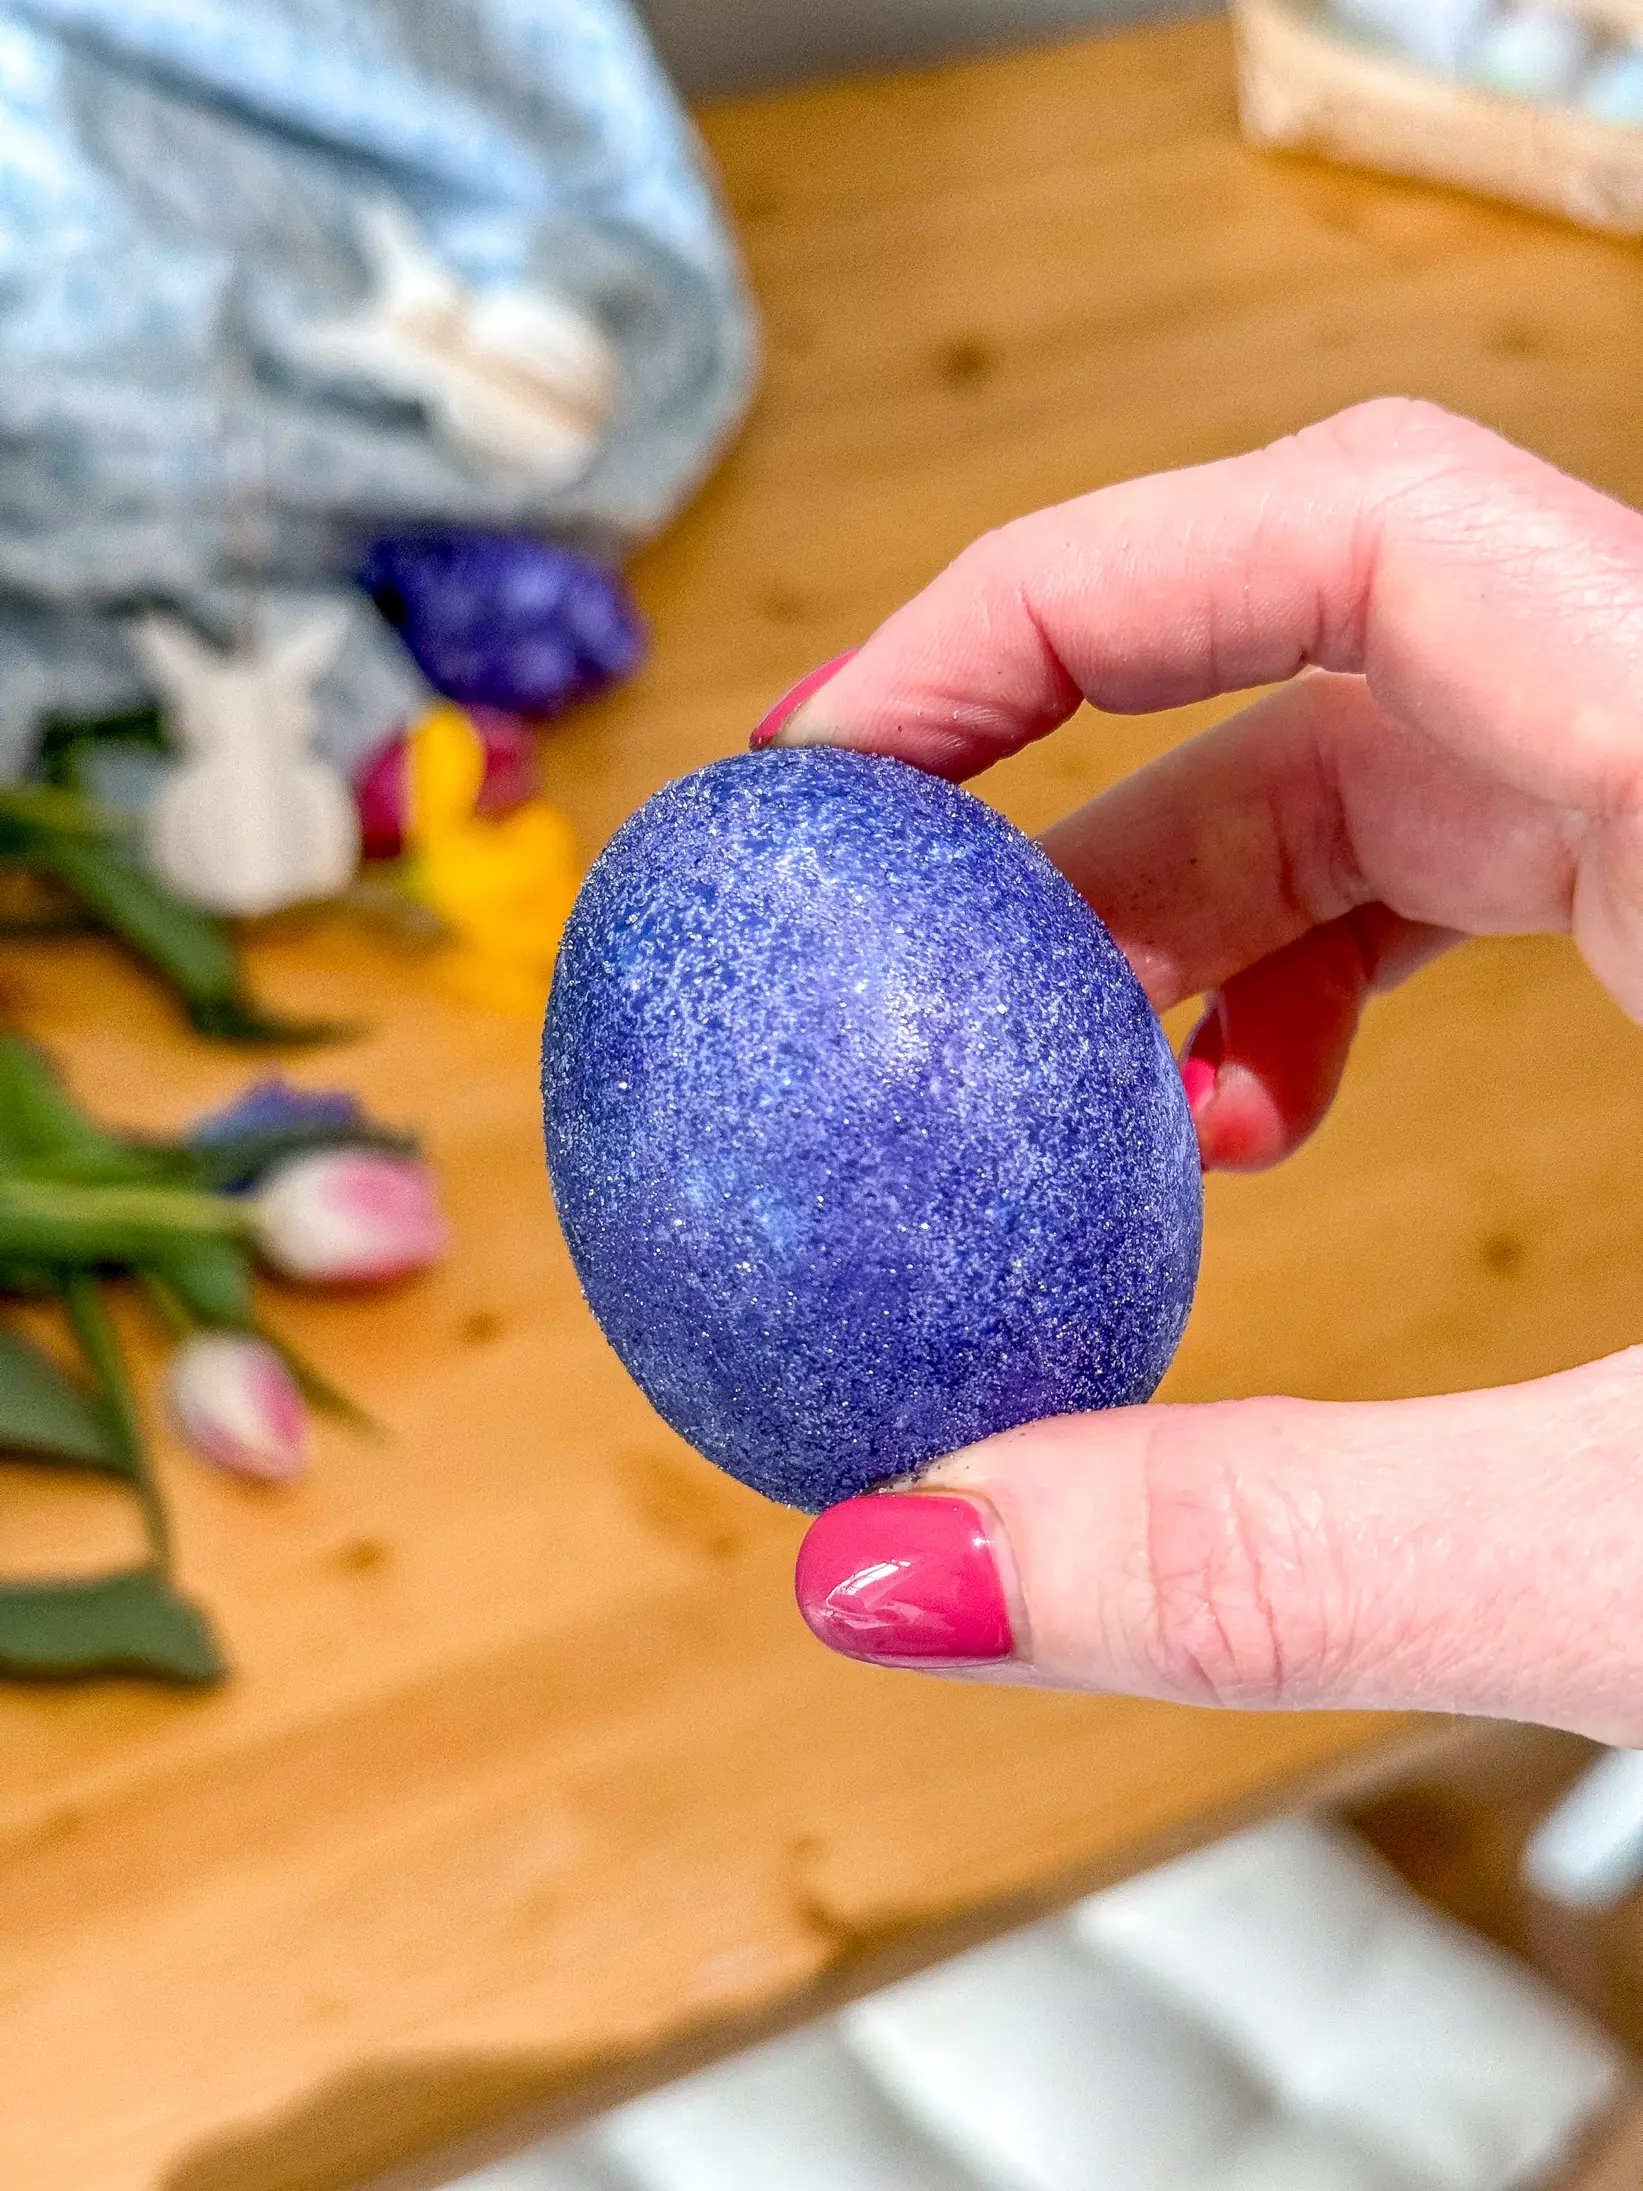 Eier, verzaubert im schimmernden Sud aus Traubensaft und Glitzerfarbe, ruhen und enthüllen ihren funkelnden Zauber auf Küchenpapier.